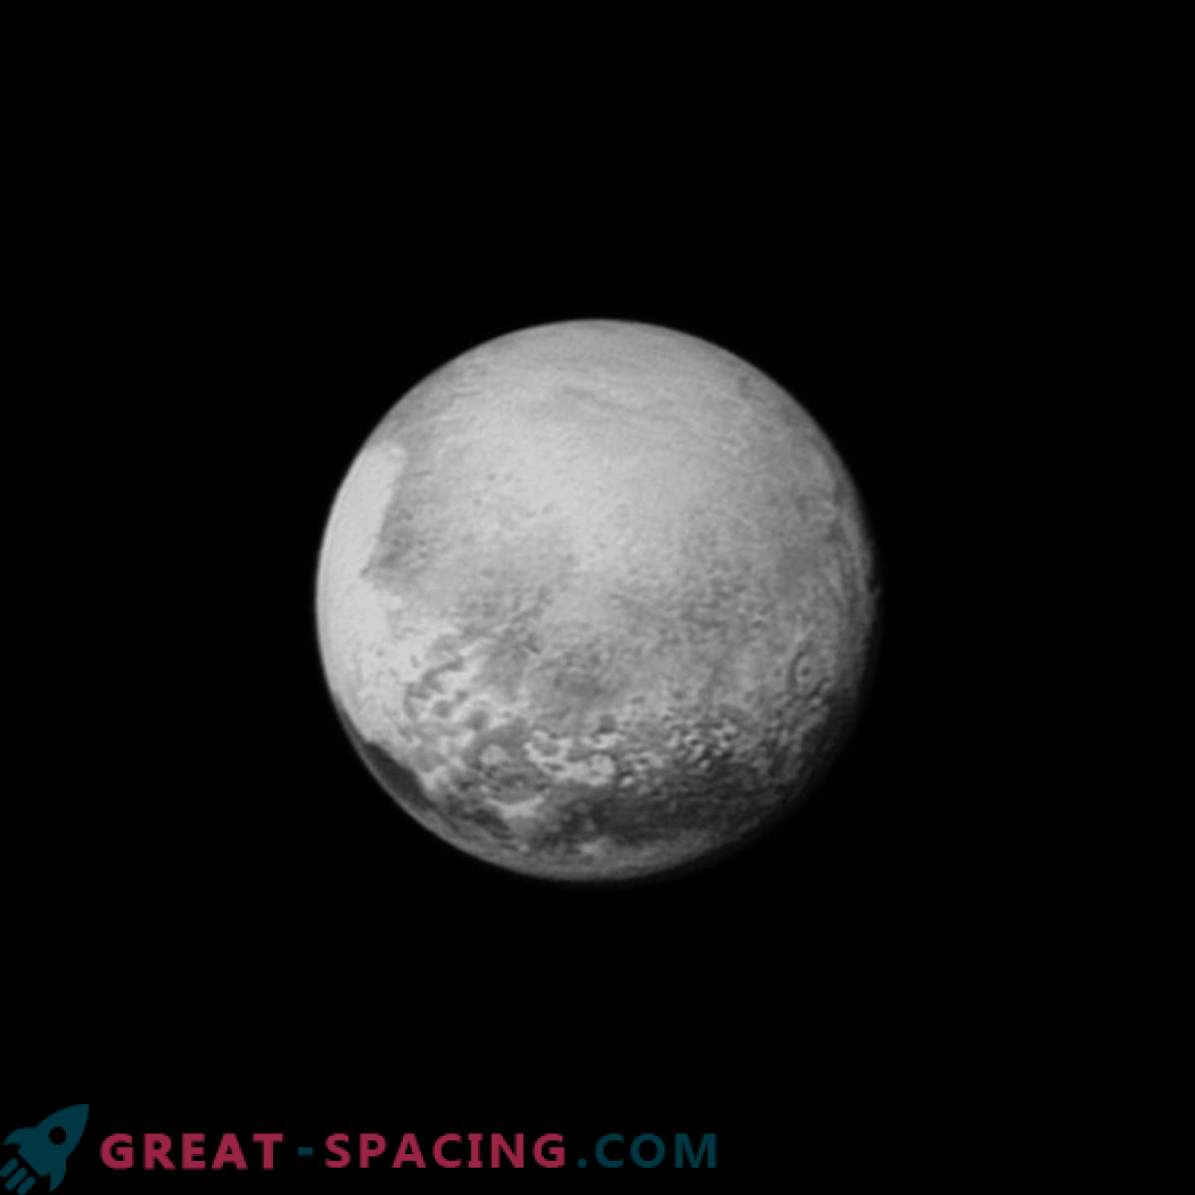 Das Raumschiff New Horizon der NASA konnte eine der grundlegenden Fragen beantworten: Wie groß ist Pluto?